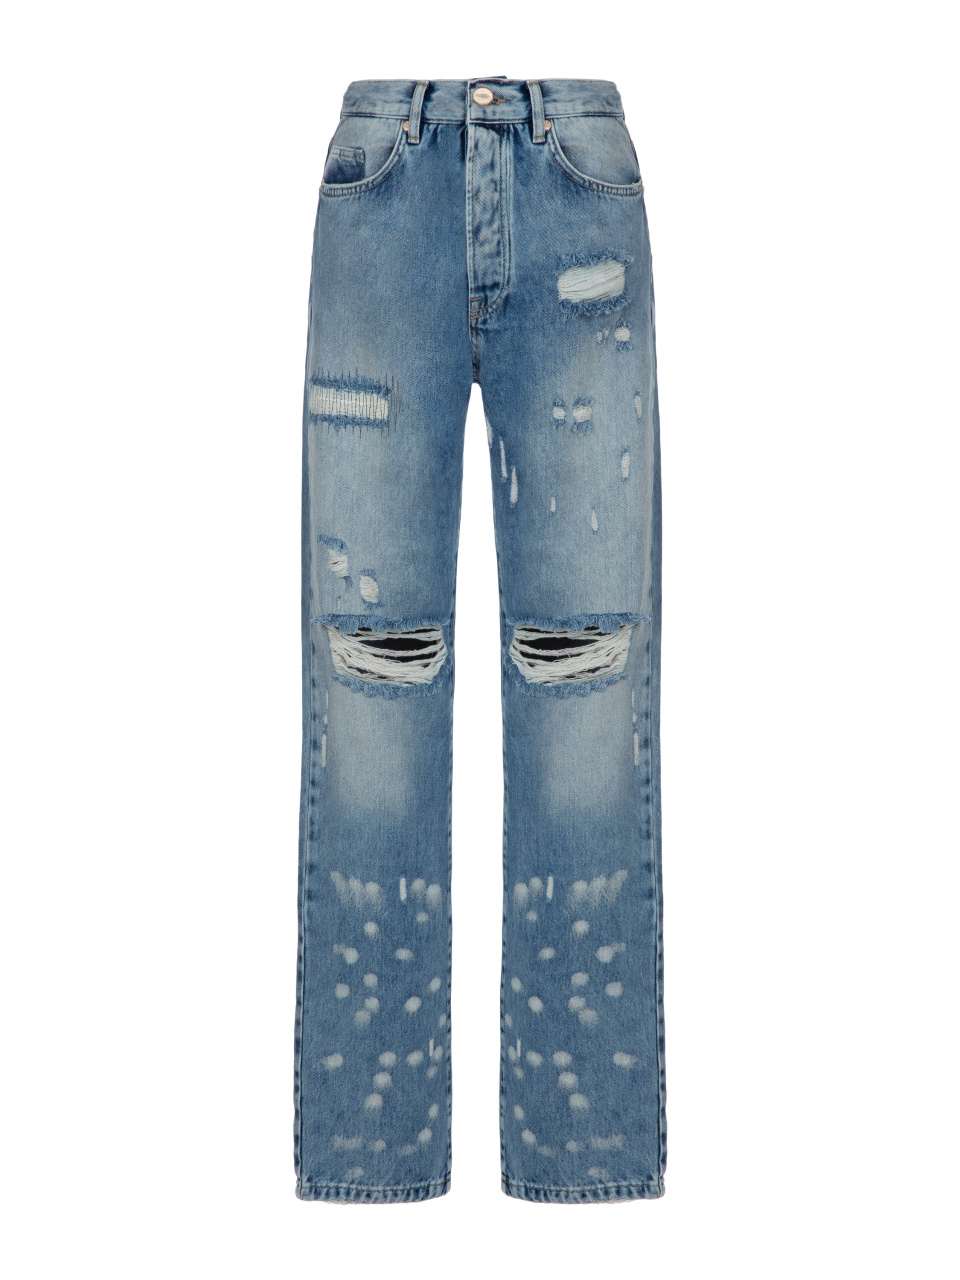 Синие рваные джинсы с разводами, 1